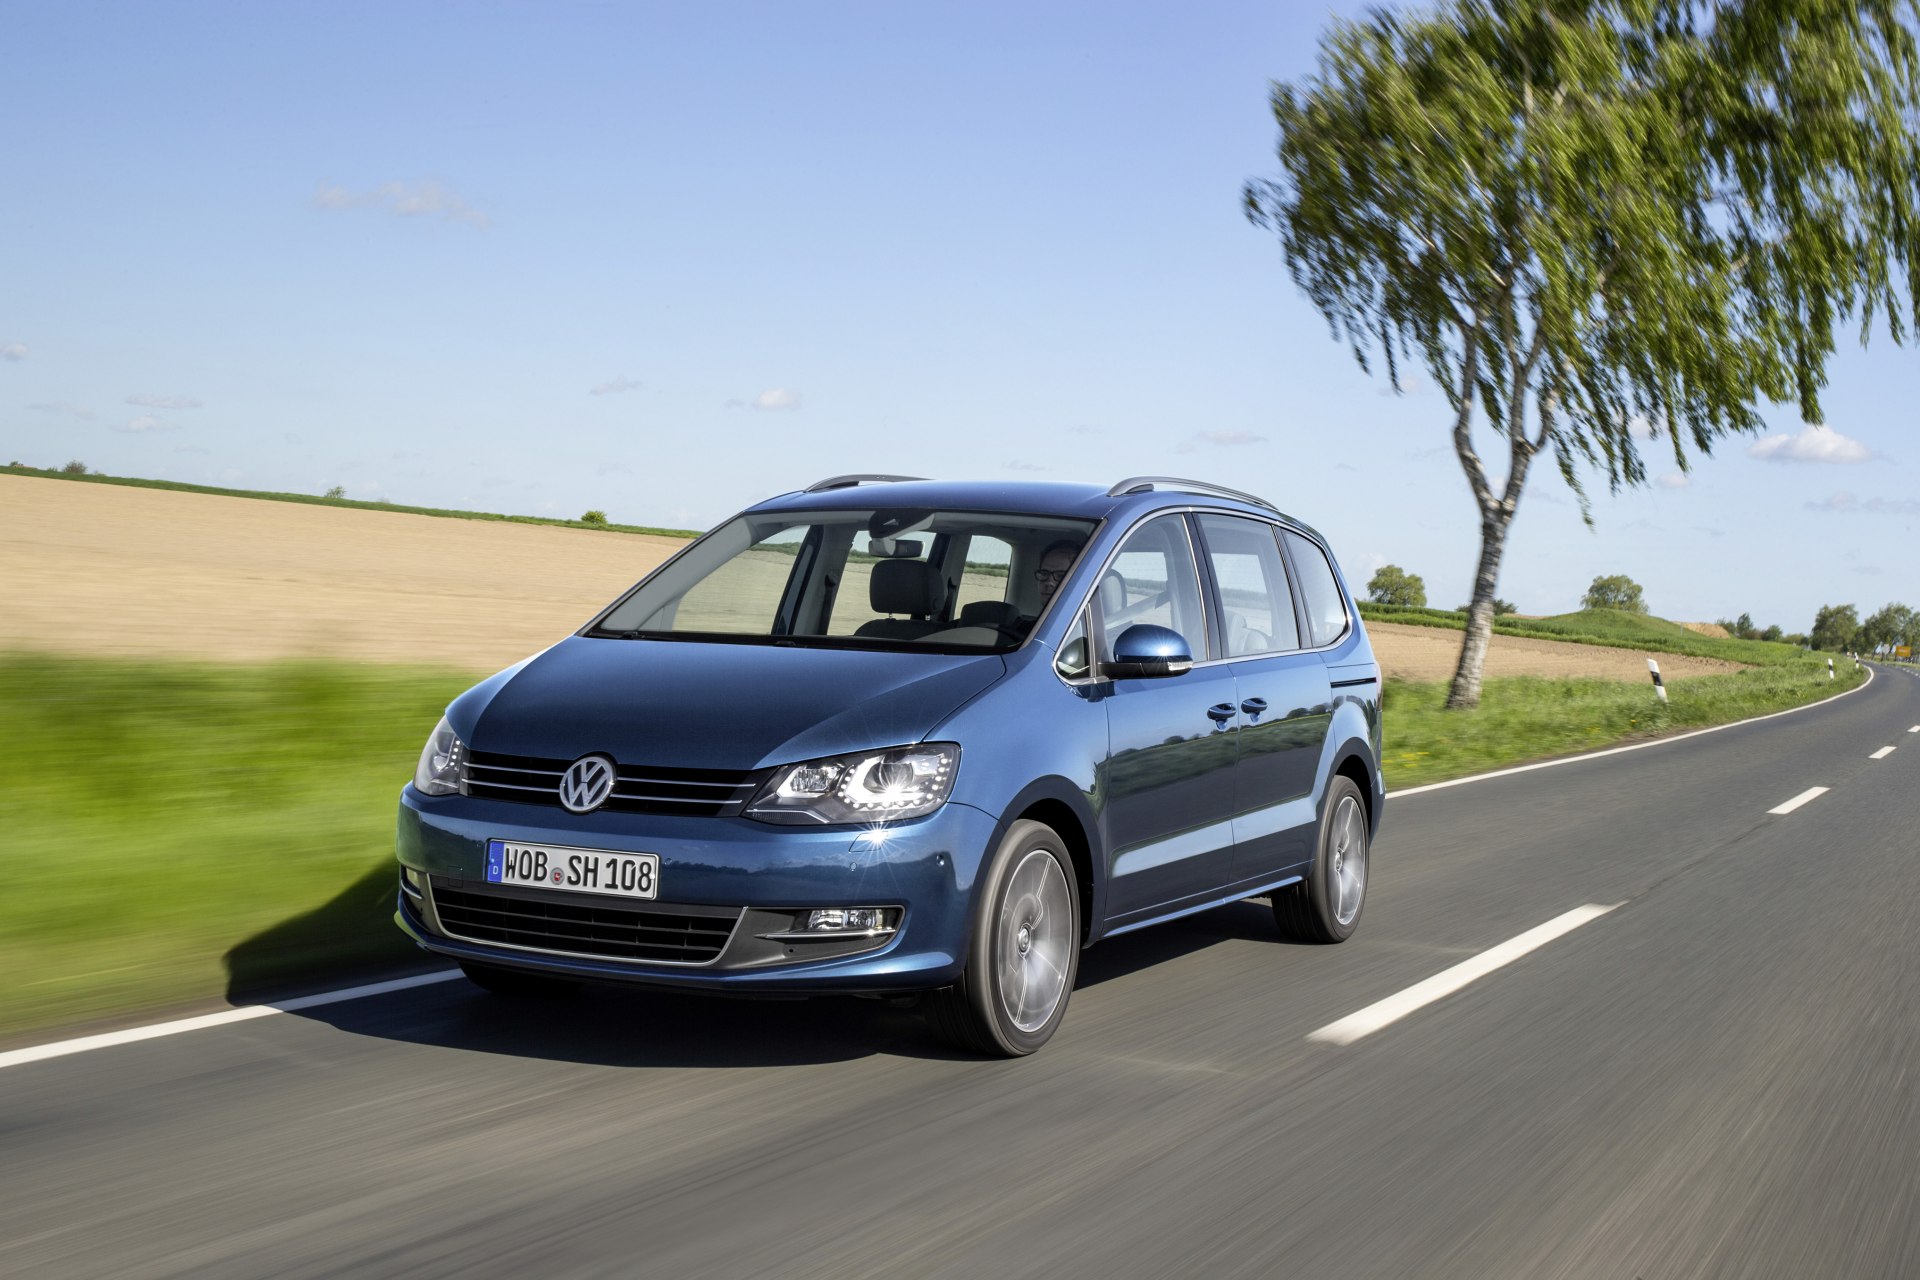 Gama y precios del Volkswagen Sharan 2015 para España